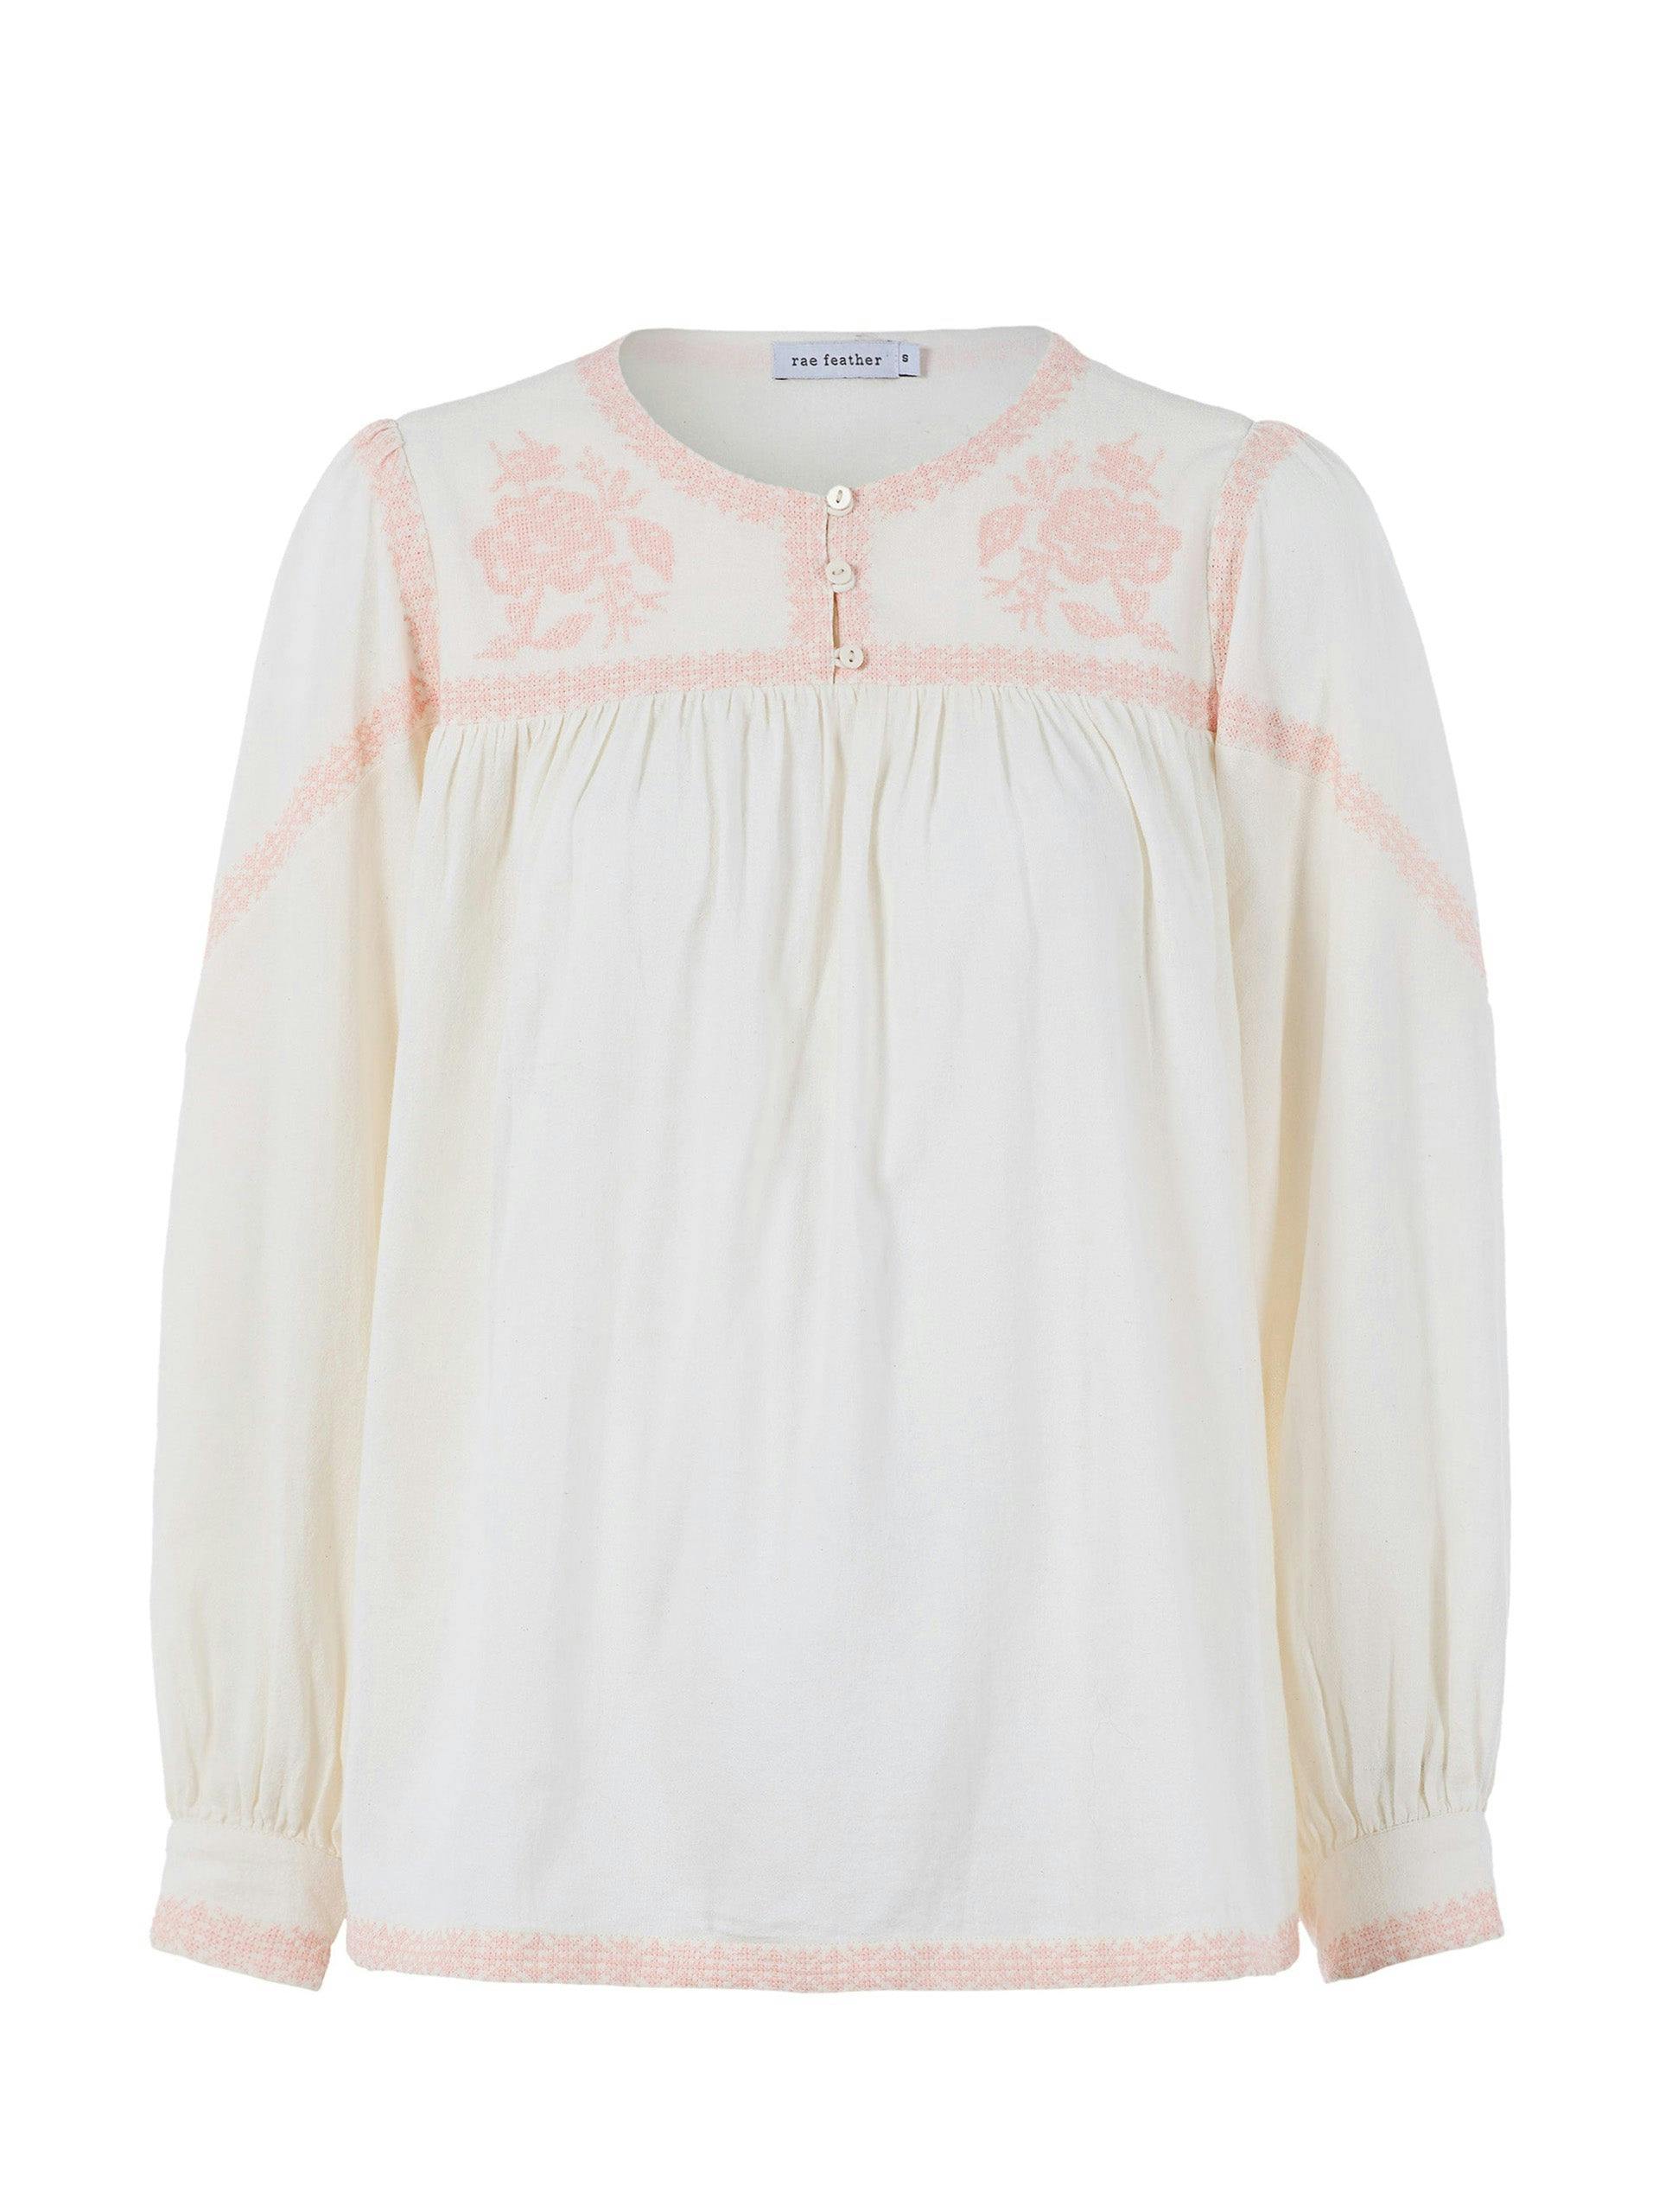 Charlotte cotton blouse